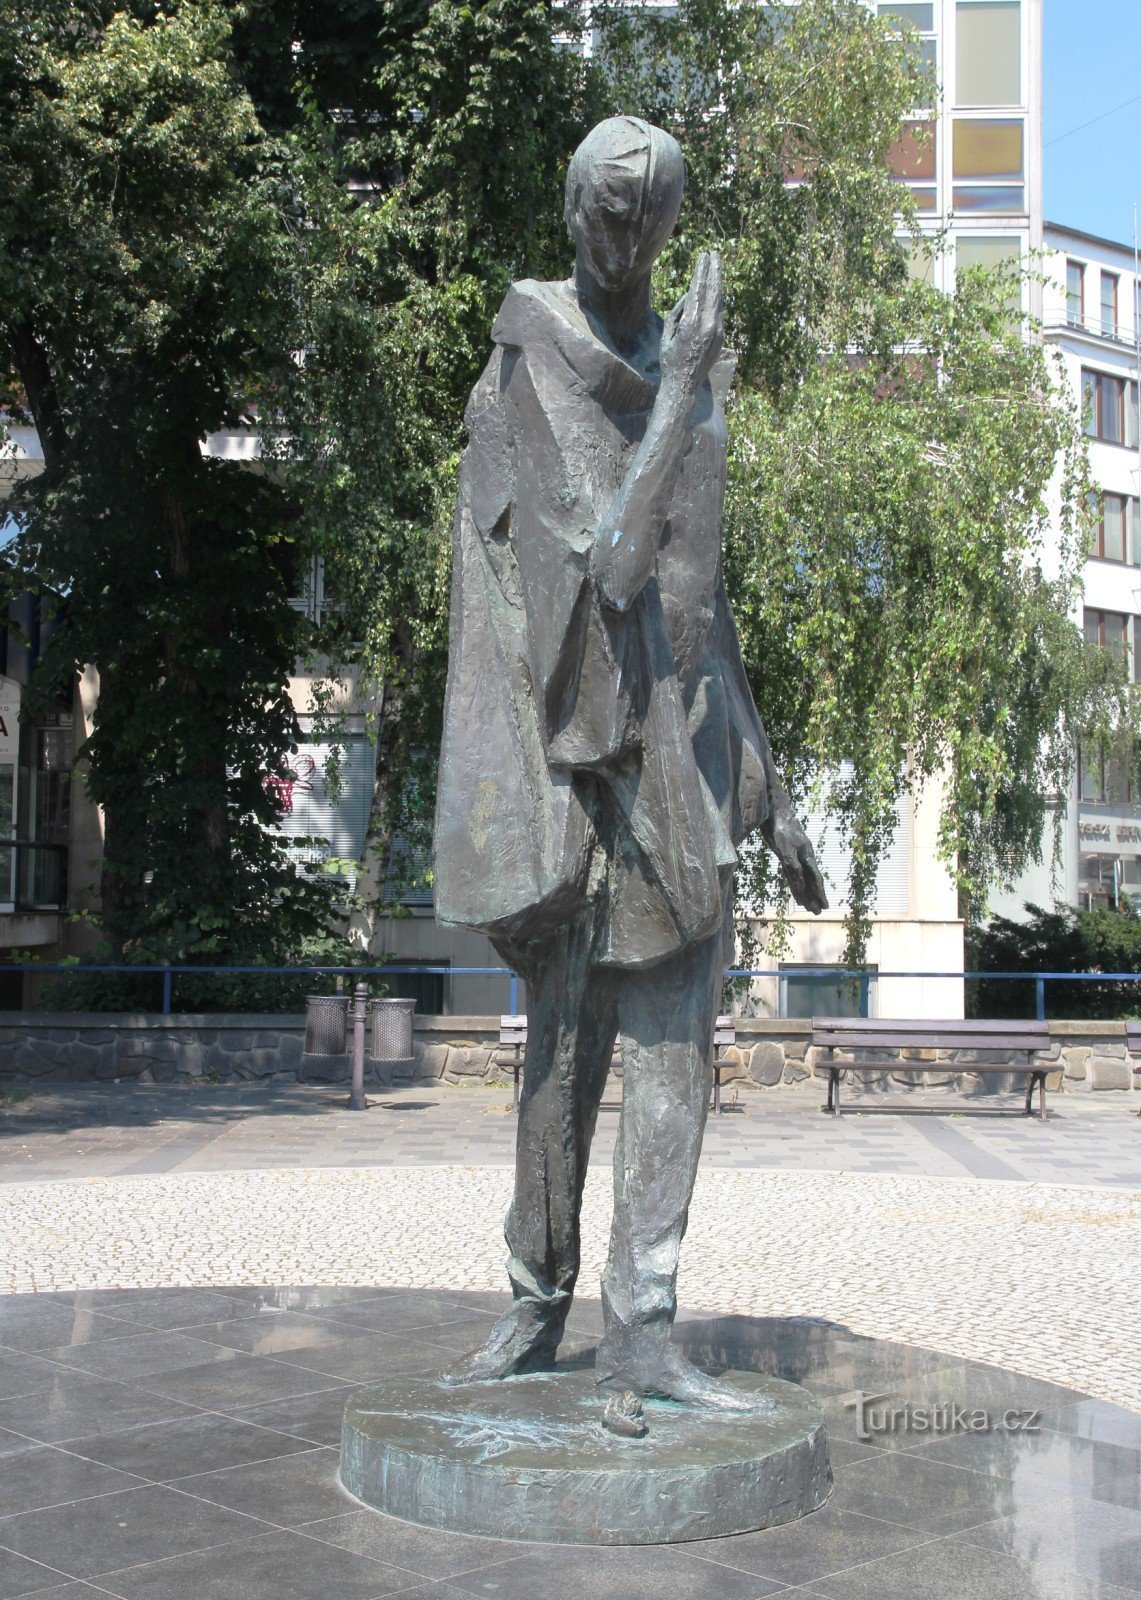 Mima statue by Jiří Marek